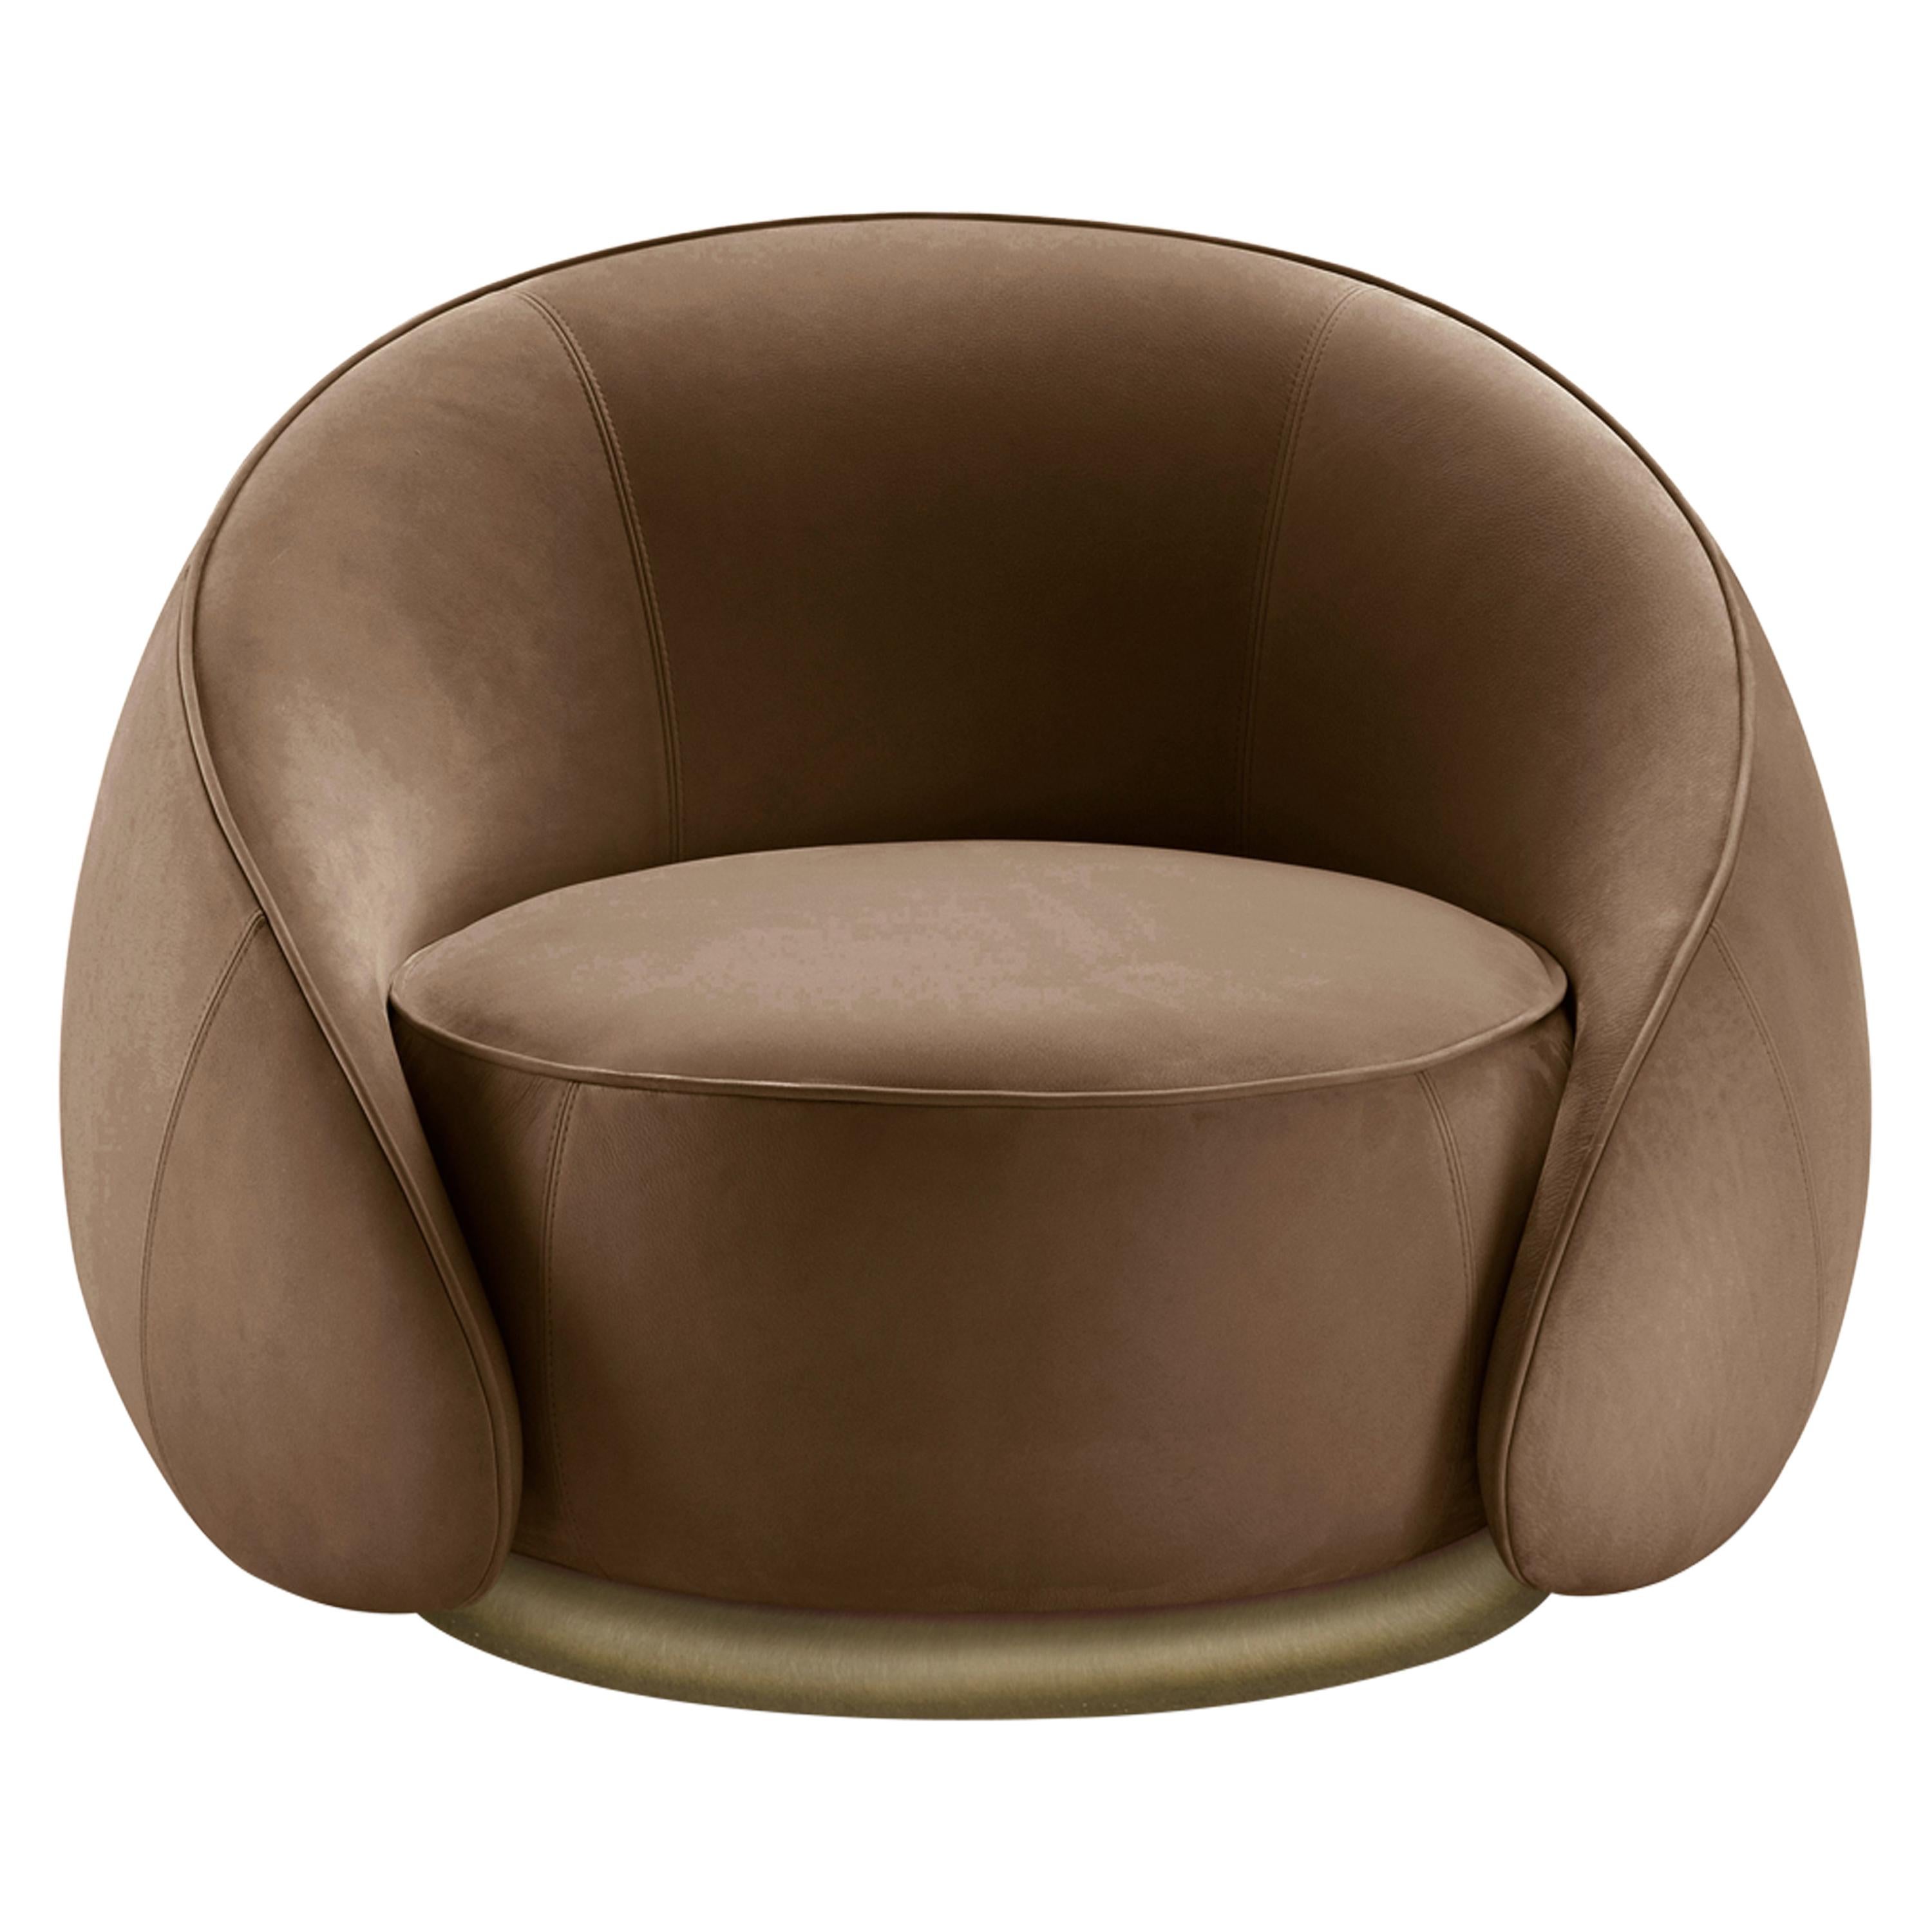 Abbracci-Sessel aus braunem Leder mit braunen Beinen aus brüniertem Messing